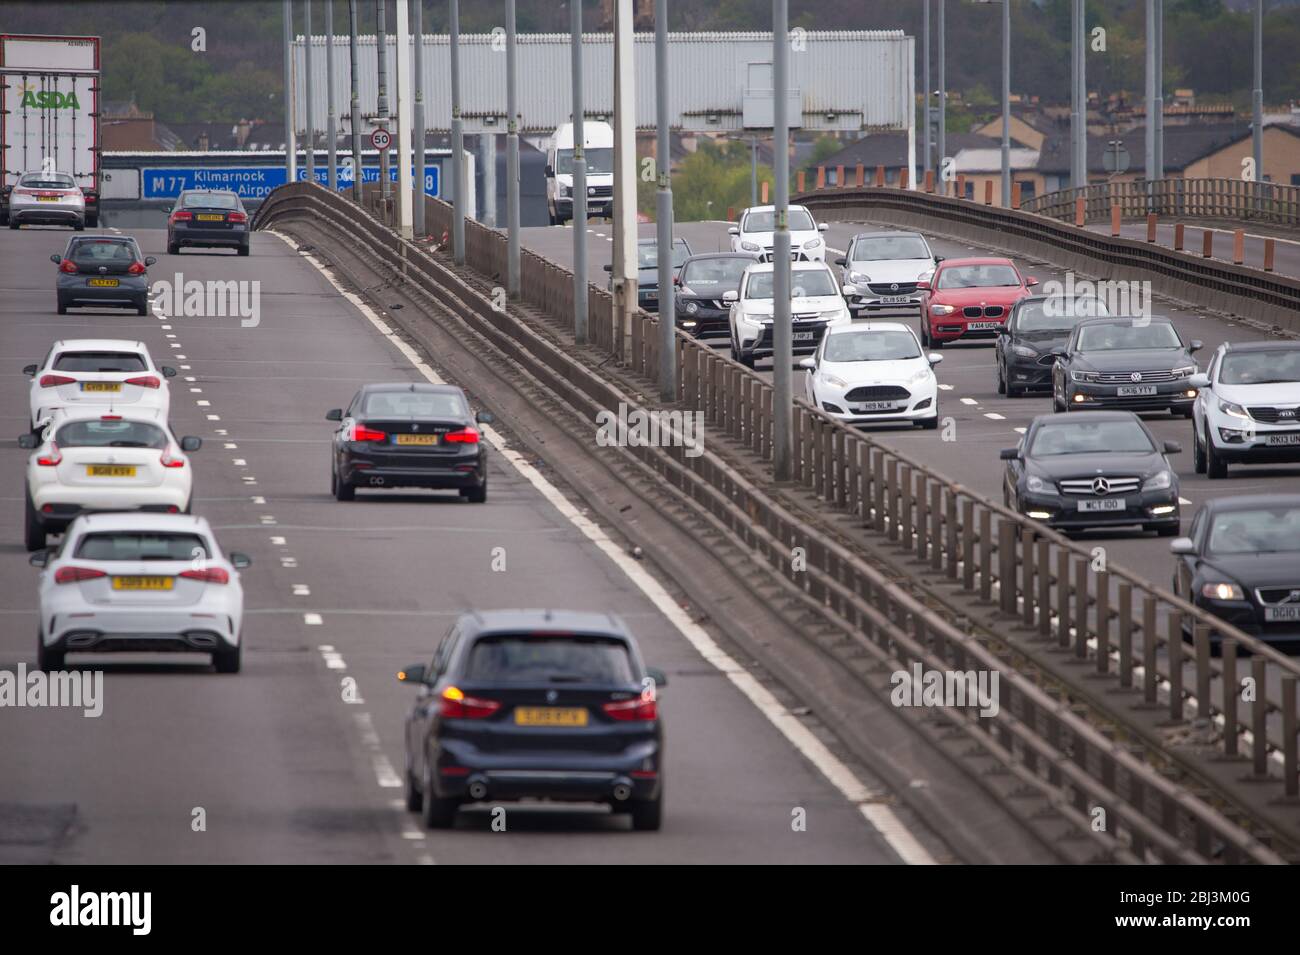 Glasgow, Royaume-Uni. 28 avril 2020. Photo : circulation prolongée des heures de pointe sur l'autoroute M 8 du pont de Kingston - le pont routier le plus achalandé d'Écosse qui transporte normalement plus de 110 000 véhicules par jour. Crédit : Colin Fisher/Alay Live News Banque D'Images